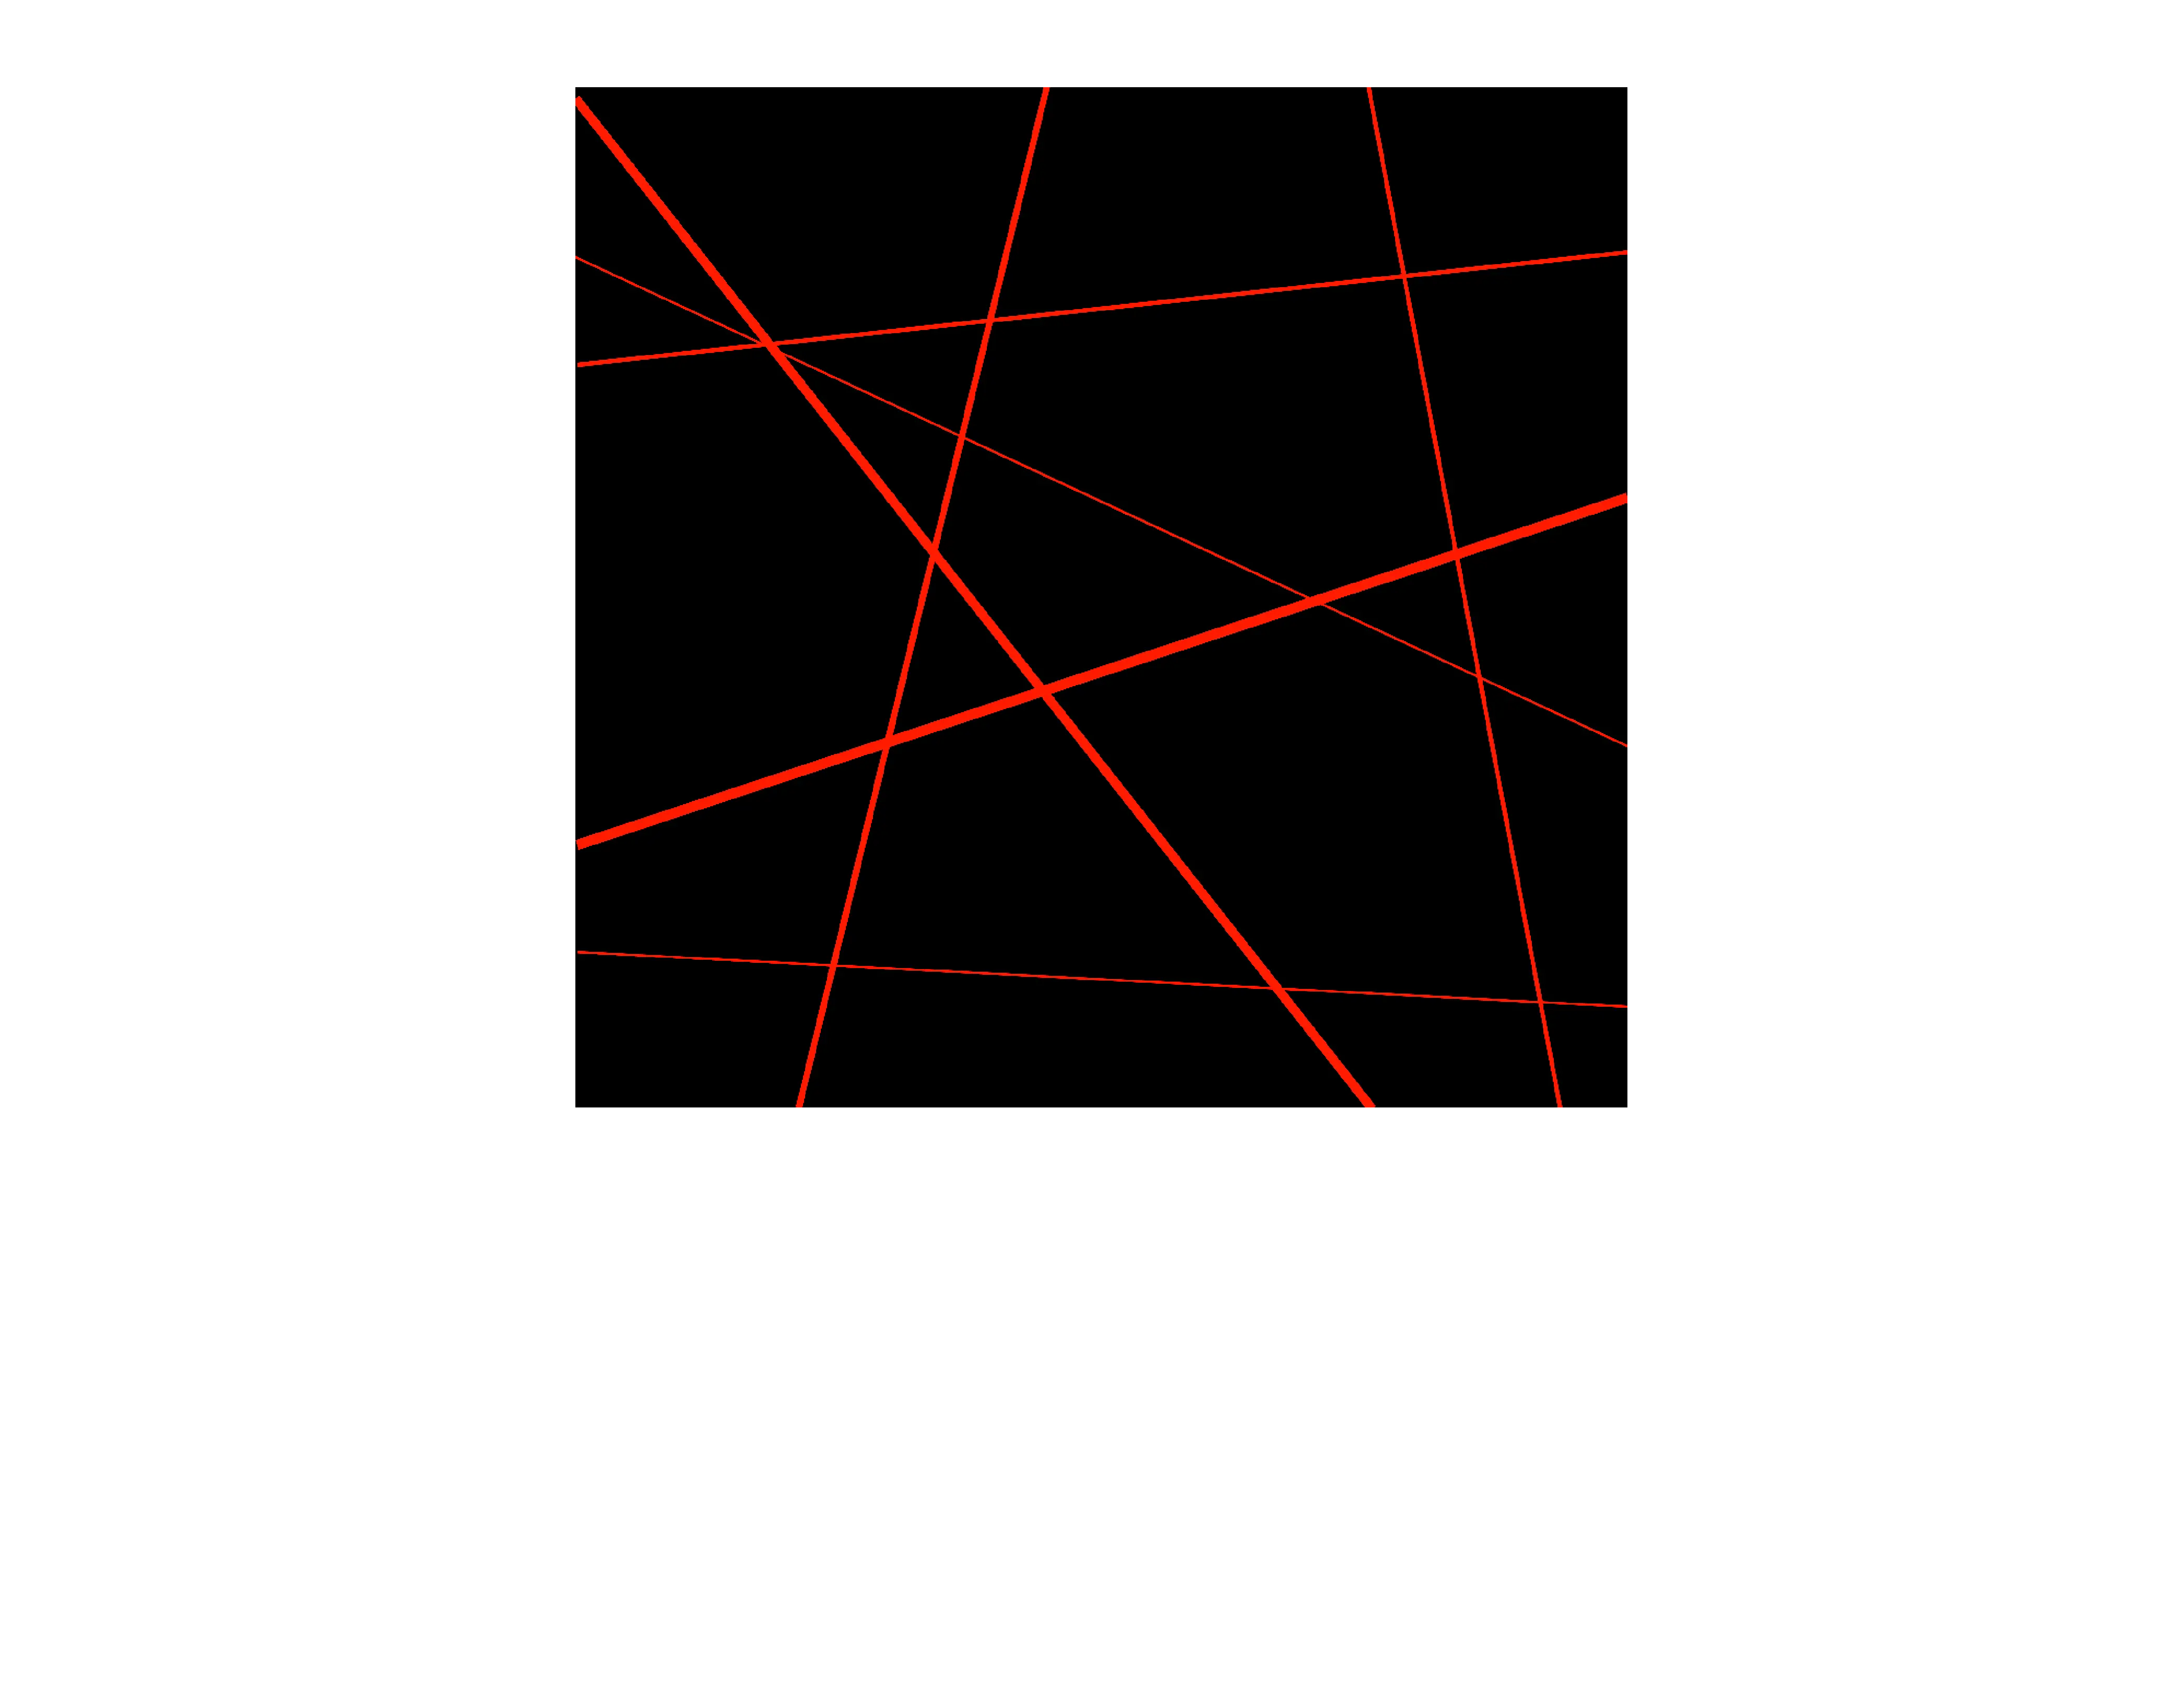 PACO MEDIAS